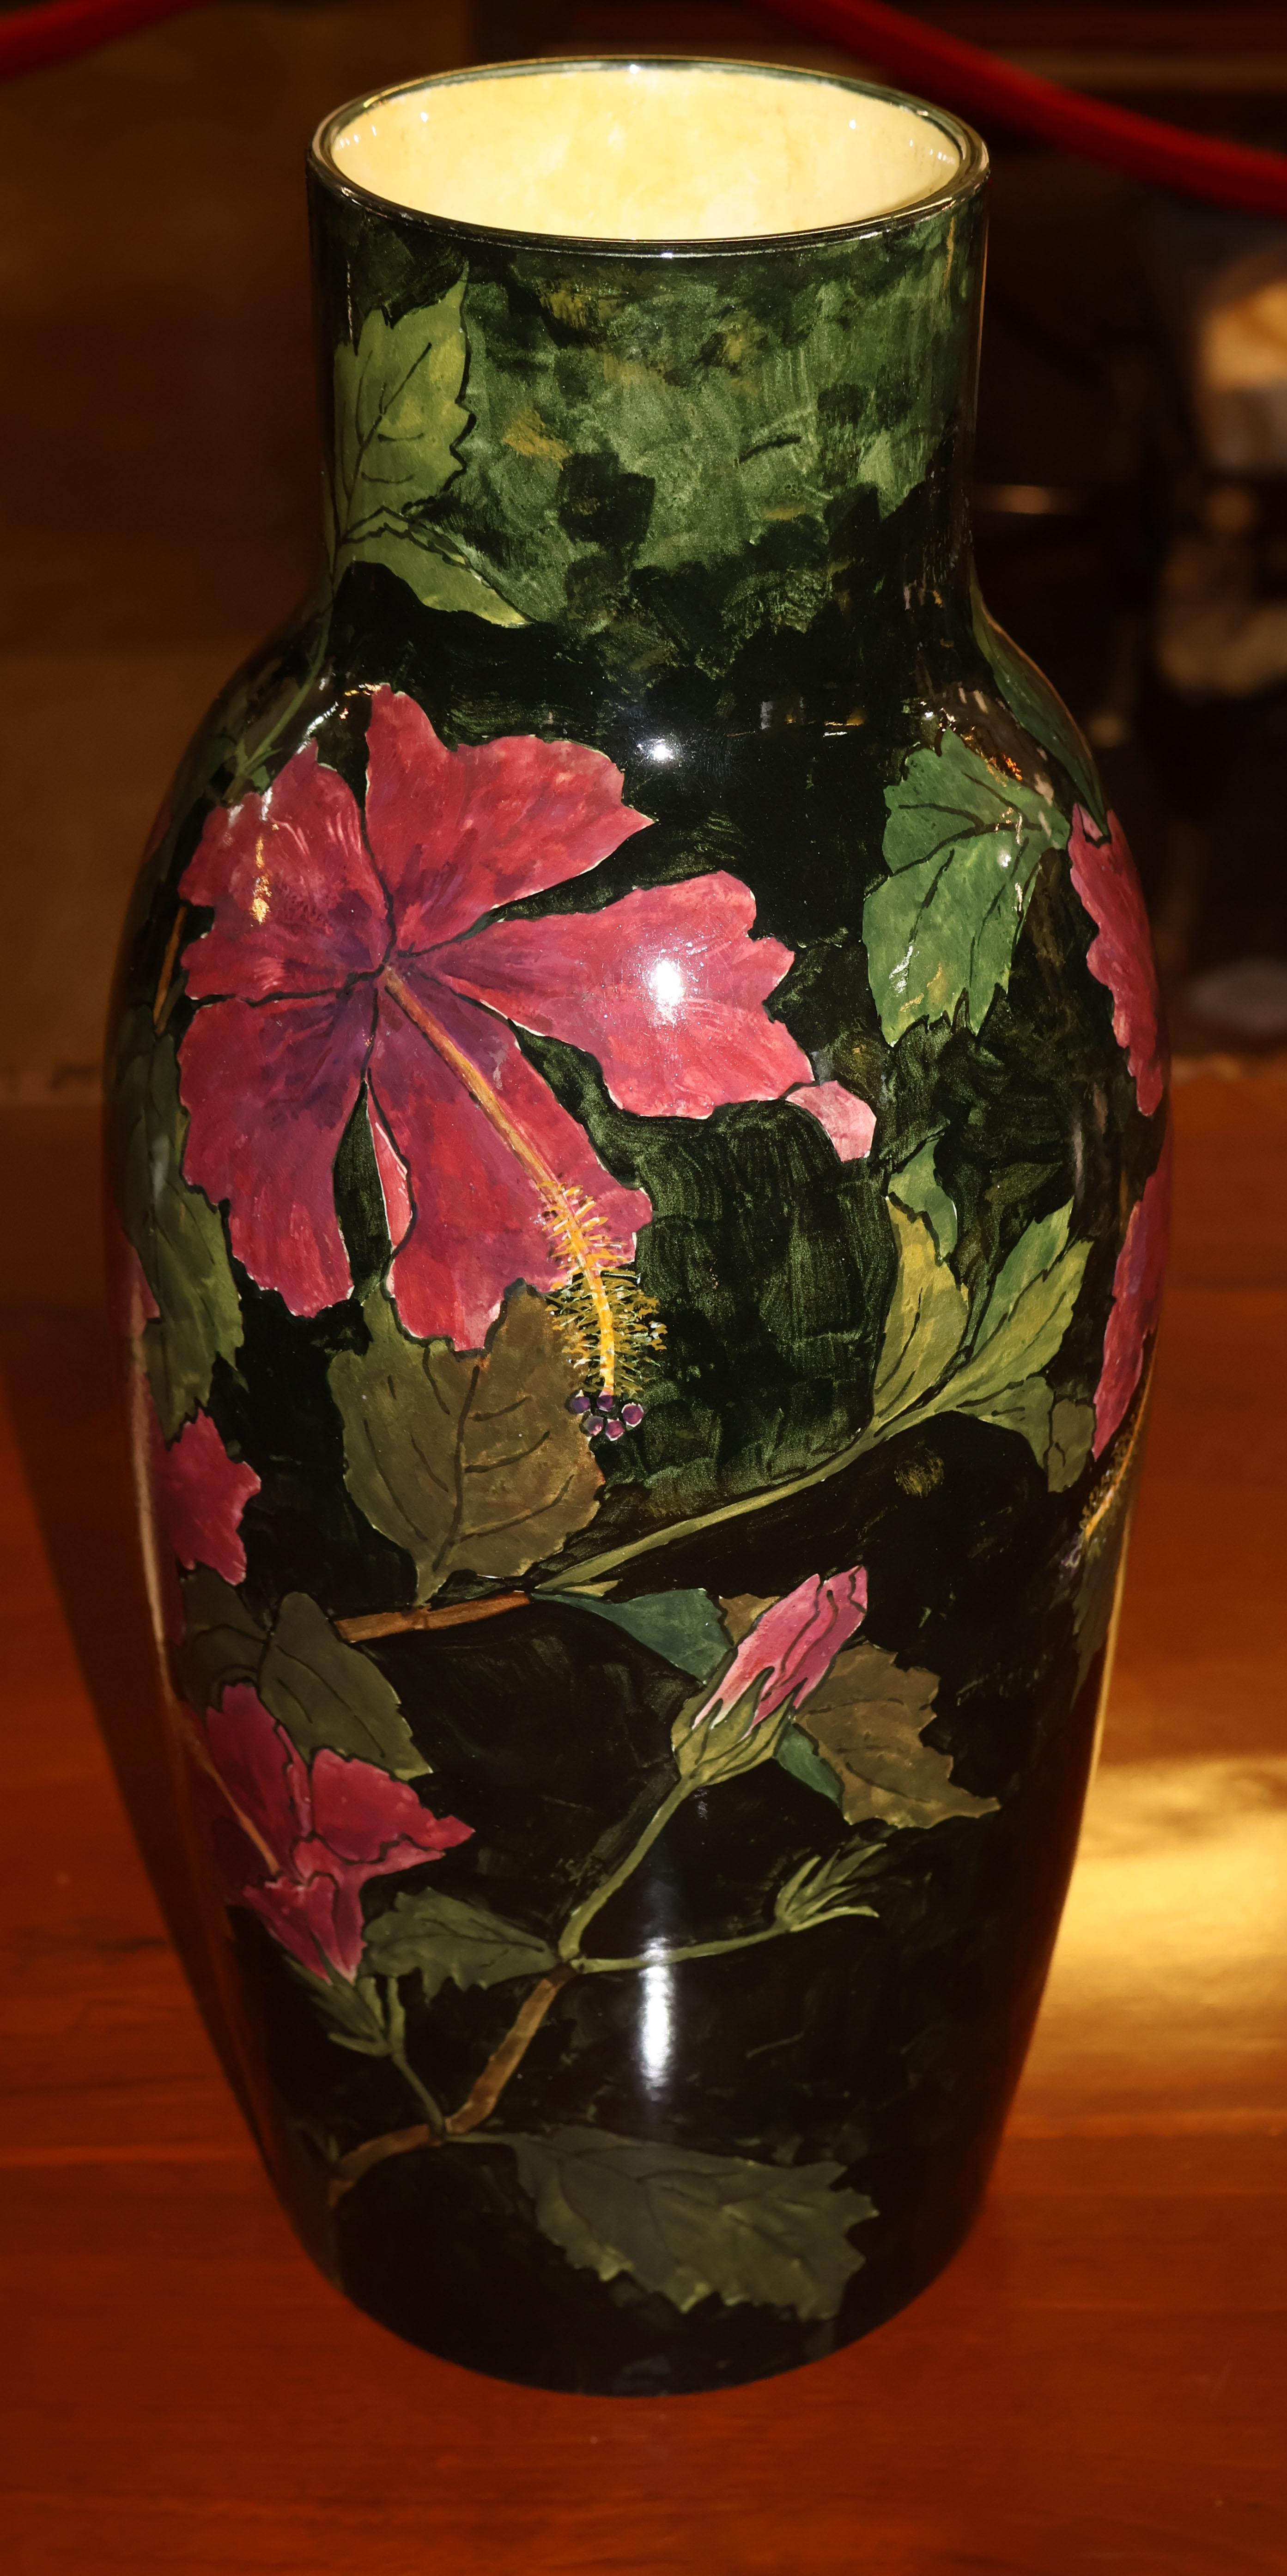 Grand vase en faïence peinte et émaillée John Bennet Hibiscus Circa 1880

Dimensions : 15,5